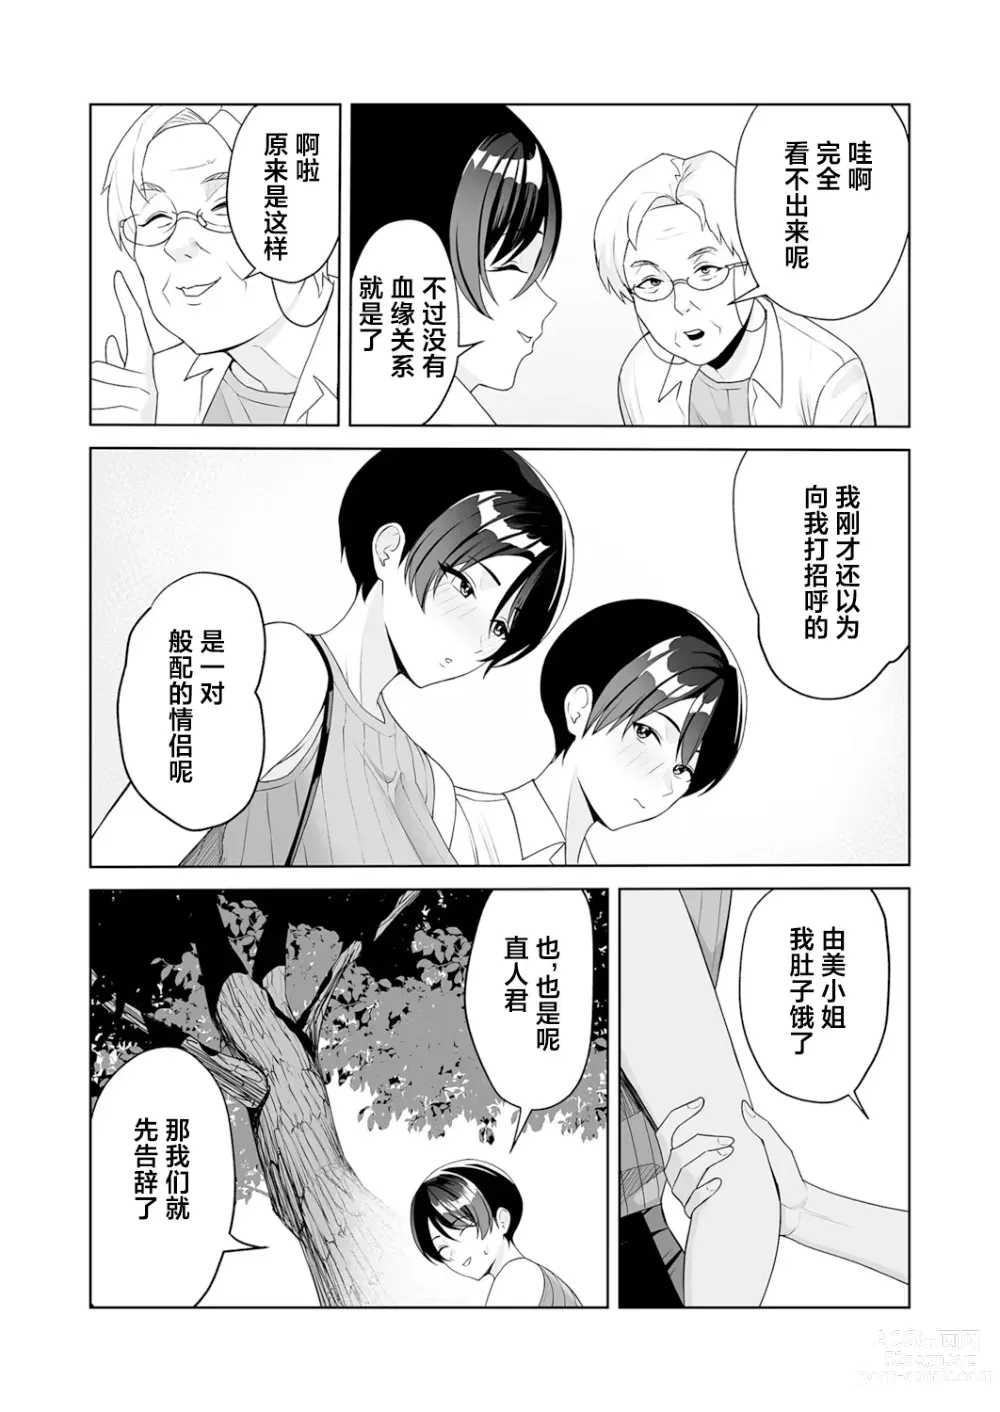 Page 146 of manga Gibo-san wa boku no mono 1-6